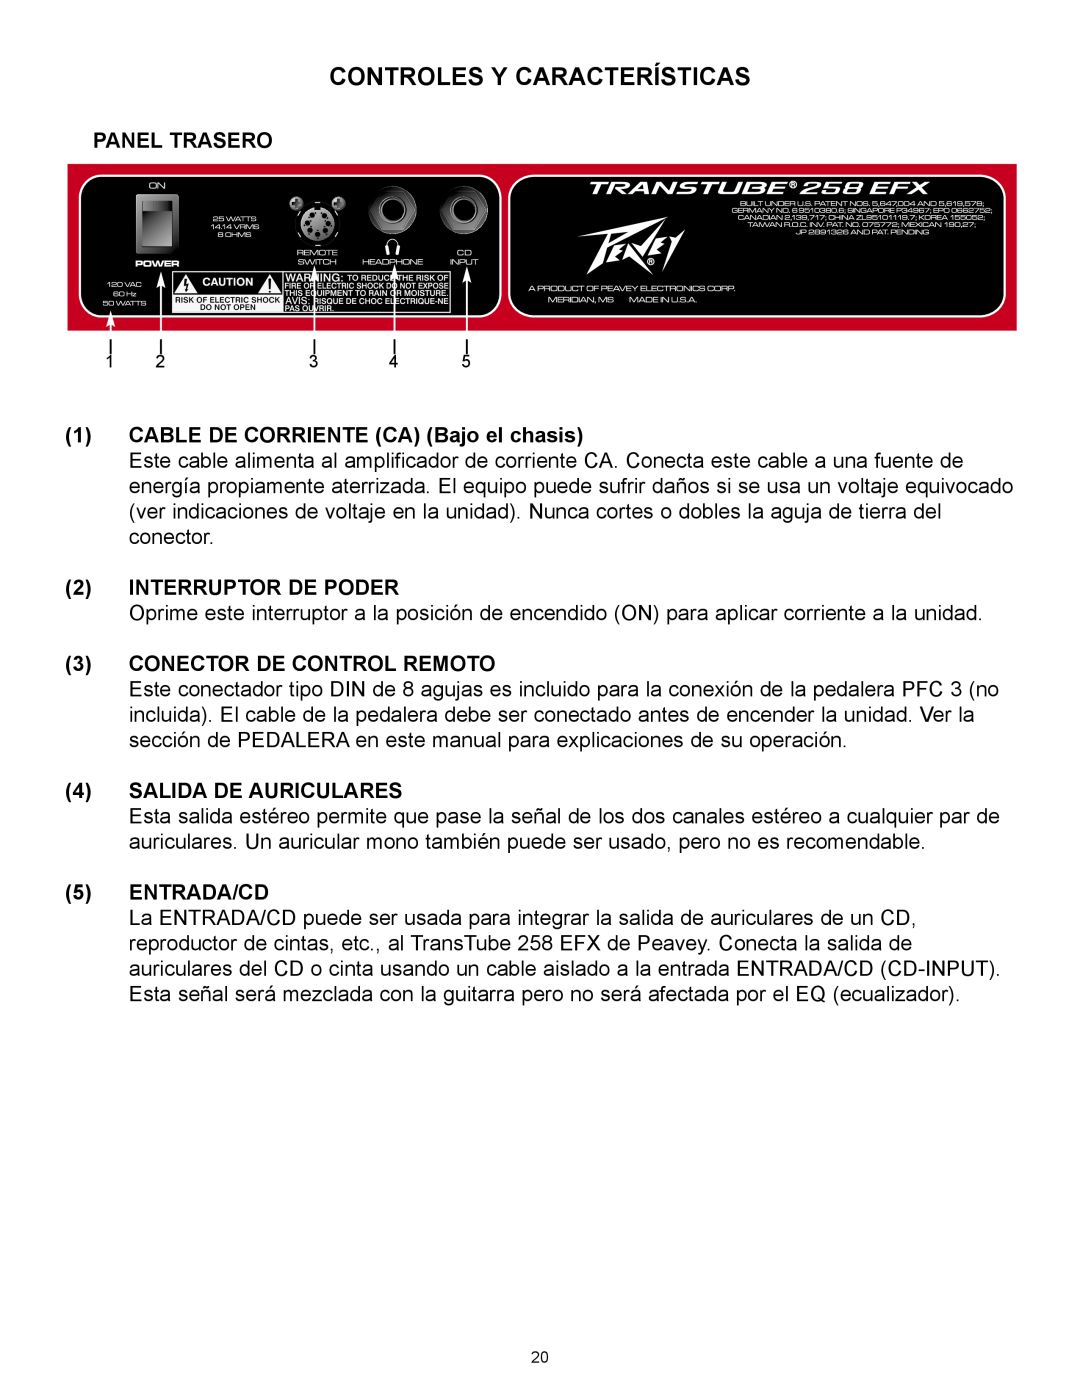 Peavey 258 EFX Controles Y Características, Panel Trasero, 1CABLE DE CORRIENTE CA Bajo el chasis, 2INTERRUPTOR DE PODER 